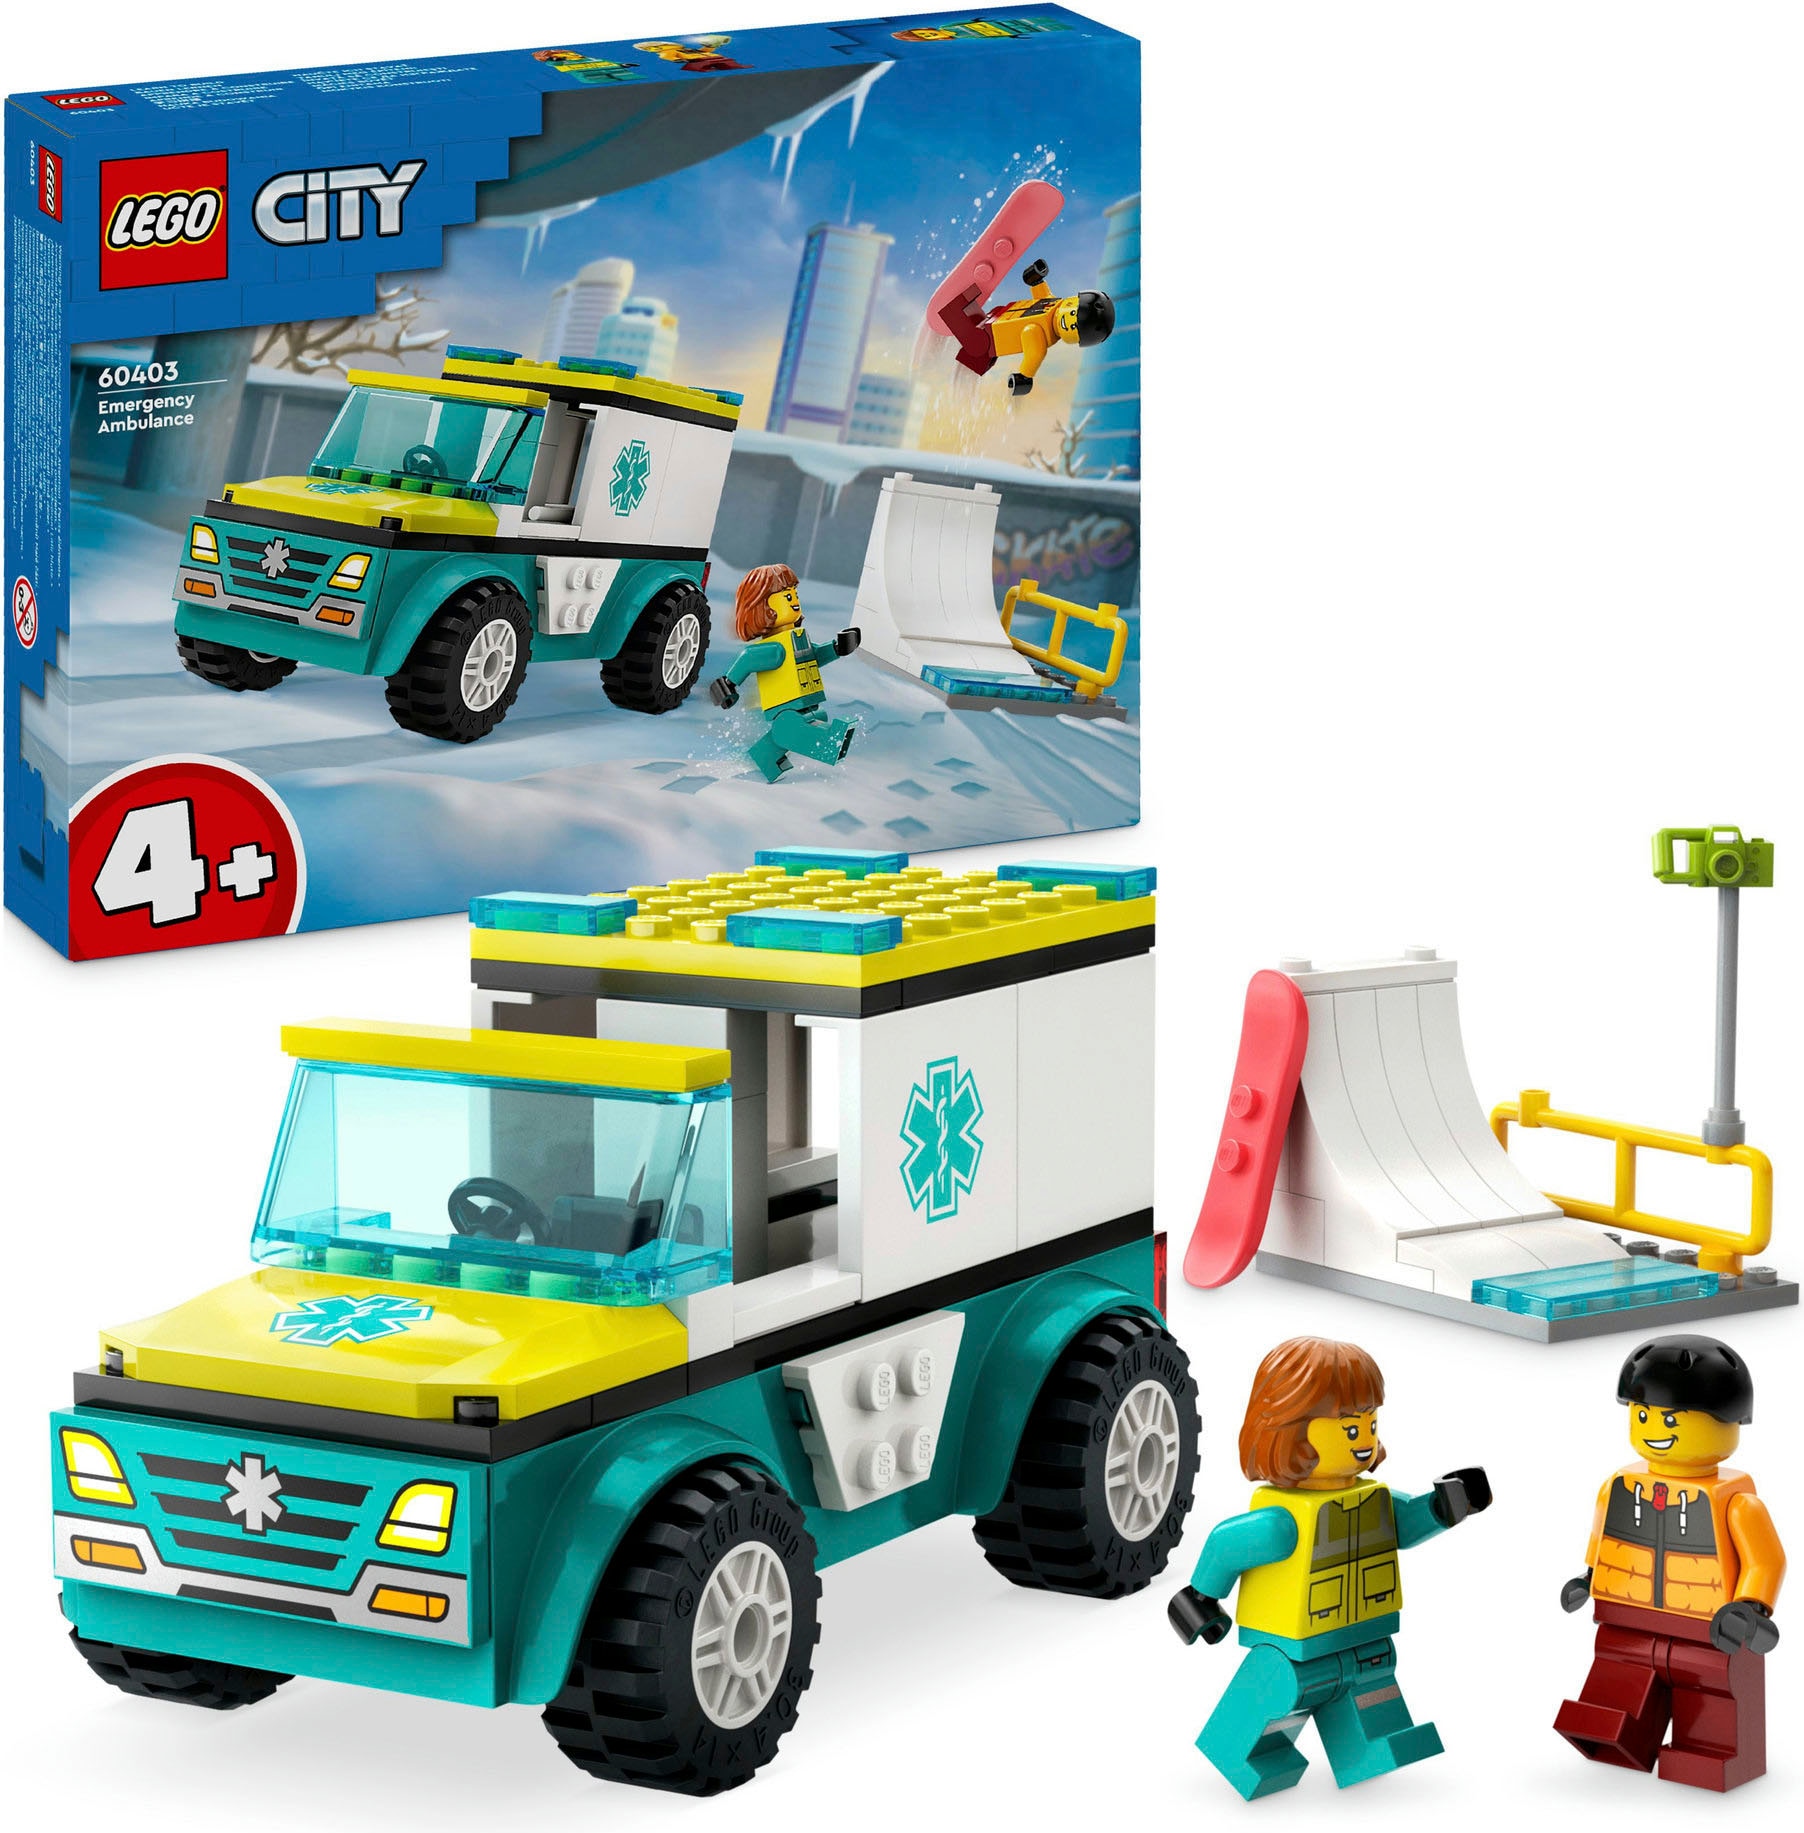 Konstruktionsspielsteine »Rettungswagen und Snowboarder (60403), LEGO City«, (79 St.),...